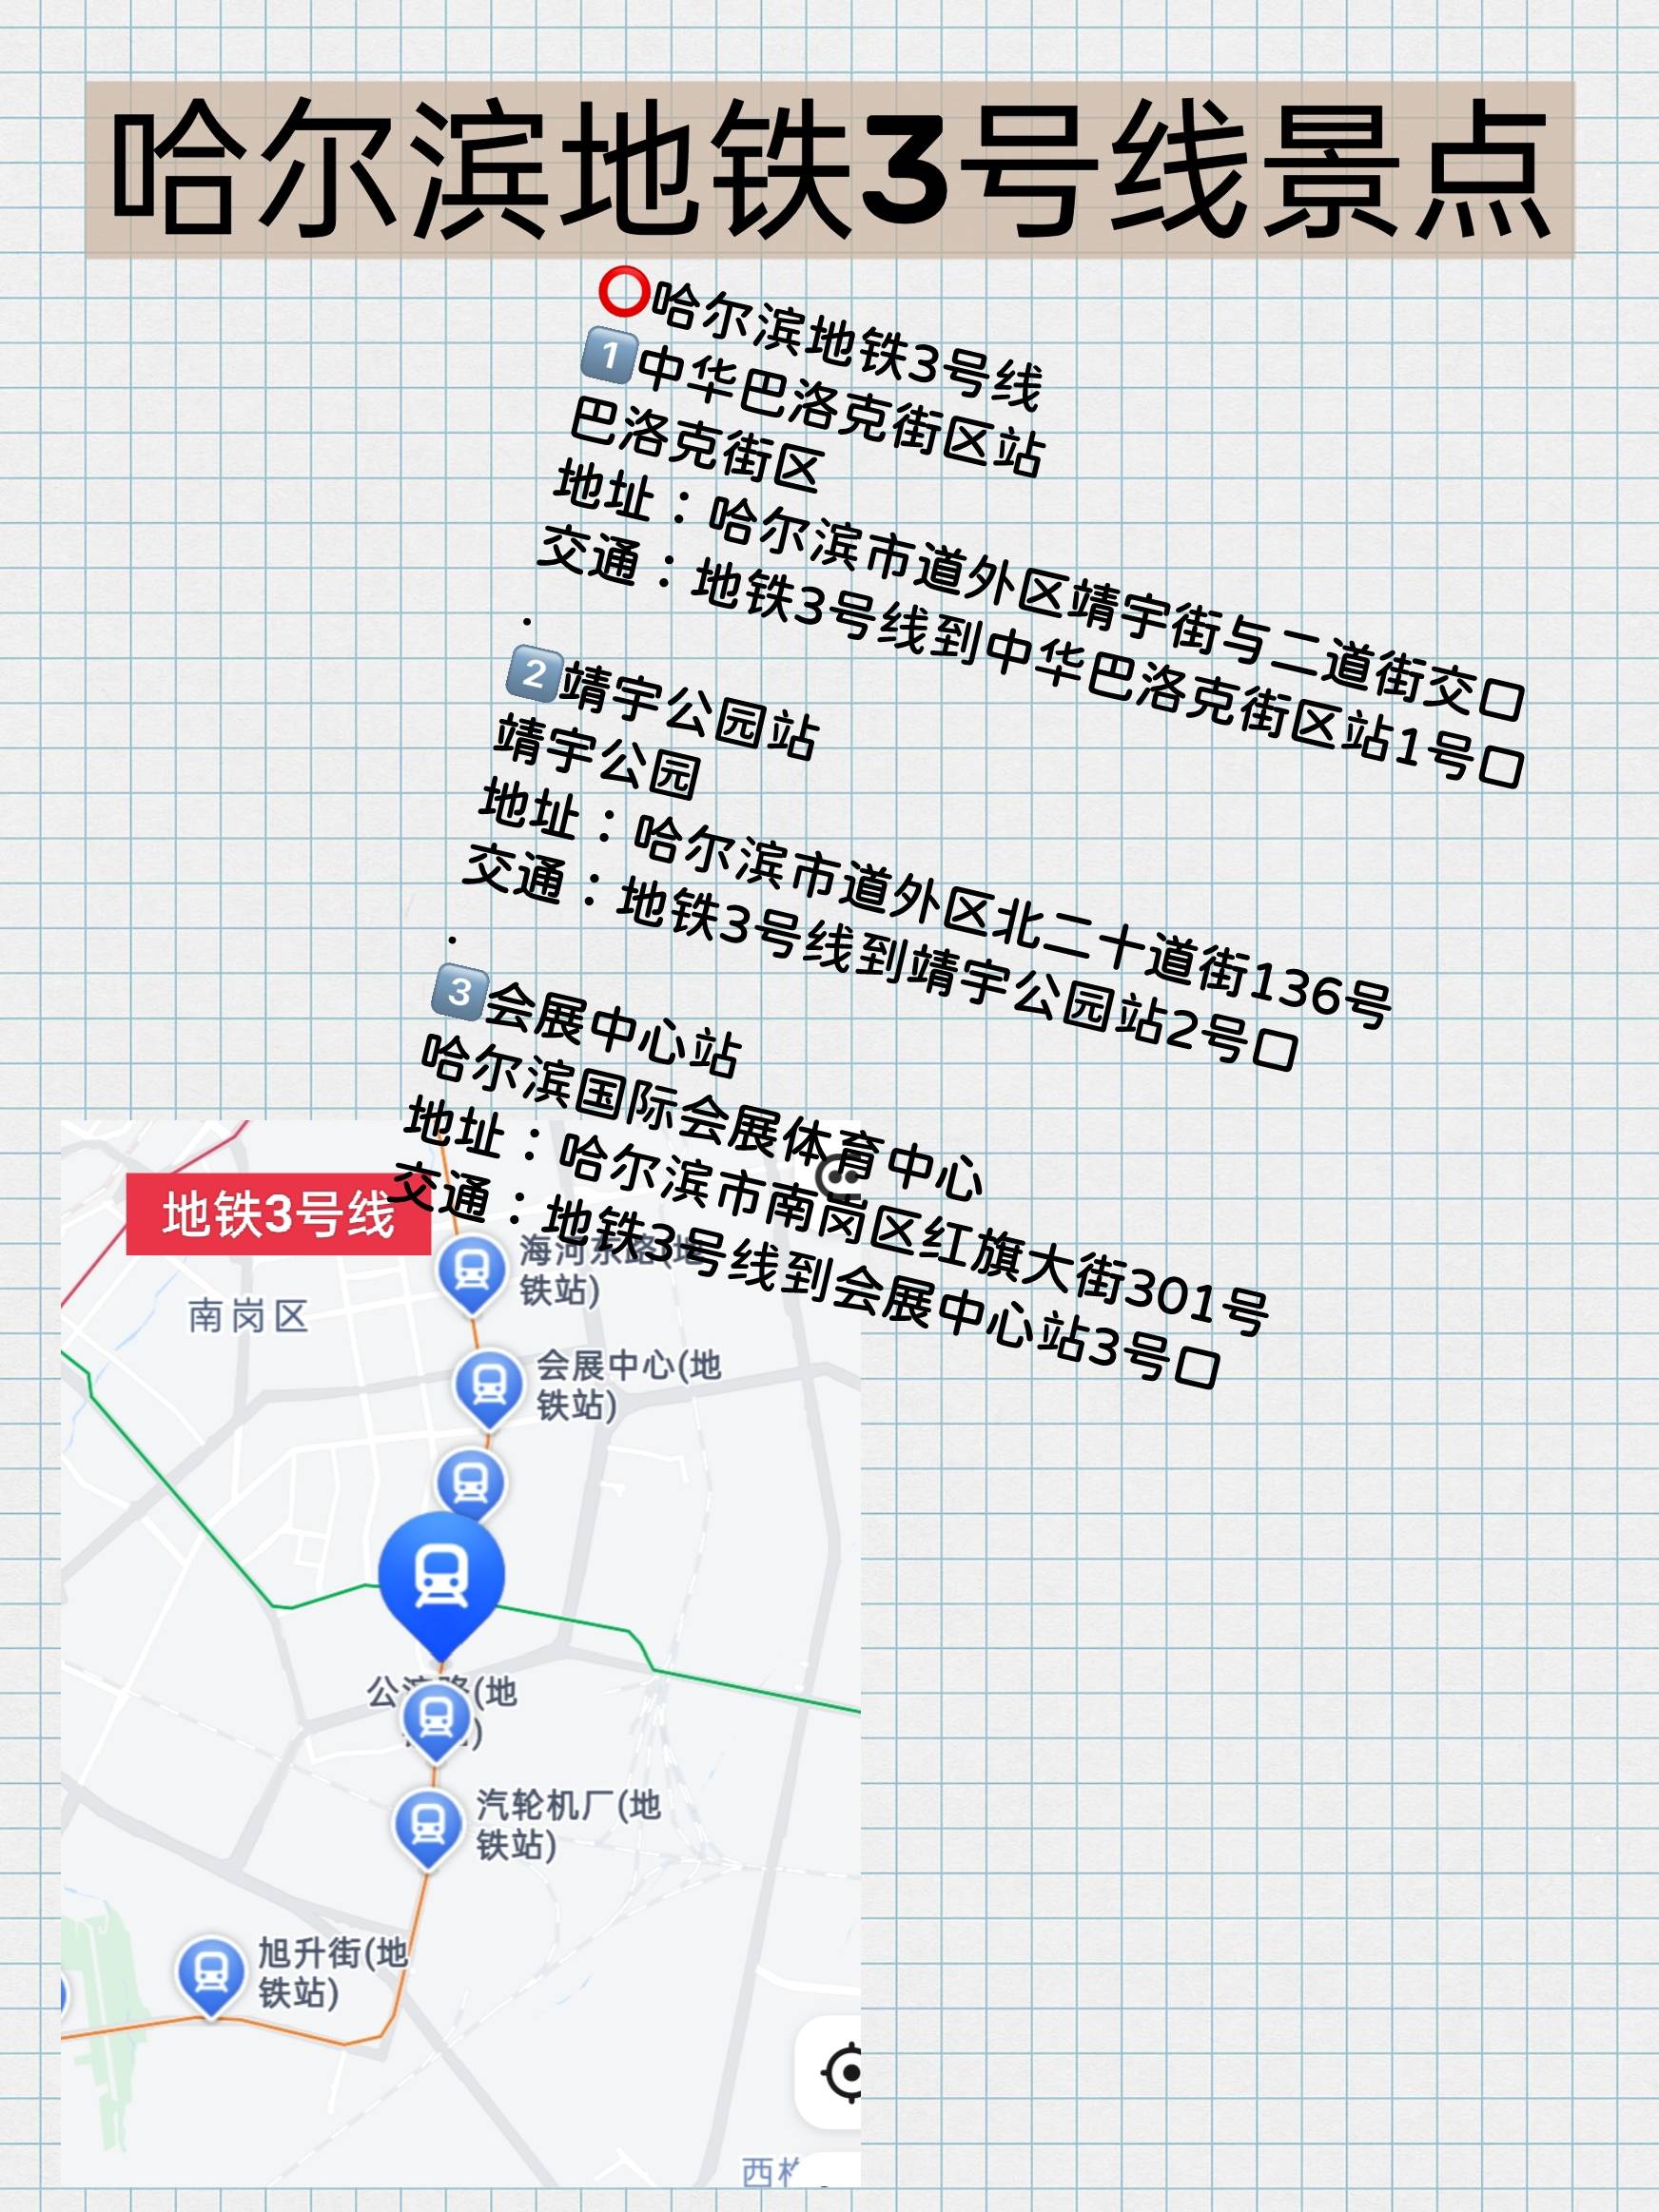 05哈尔滨住宿哈尔滨火车站,中央大街和太阳岛附近05哈尔滨一共有